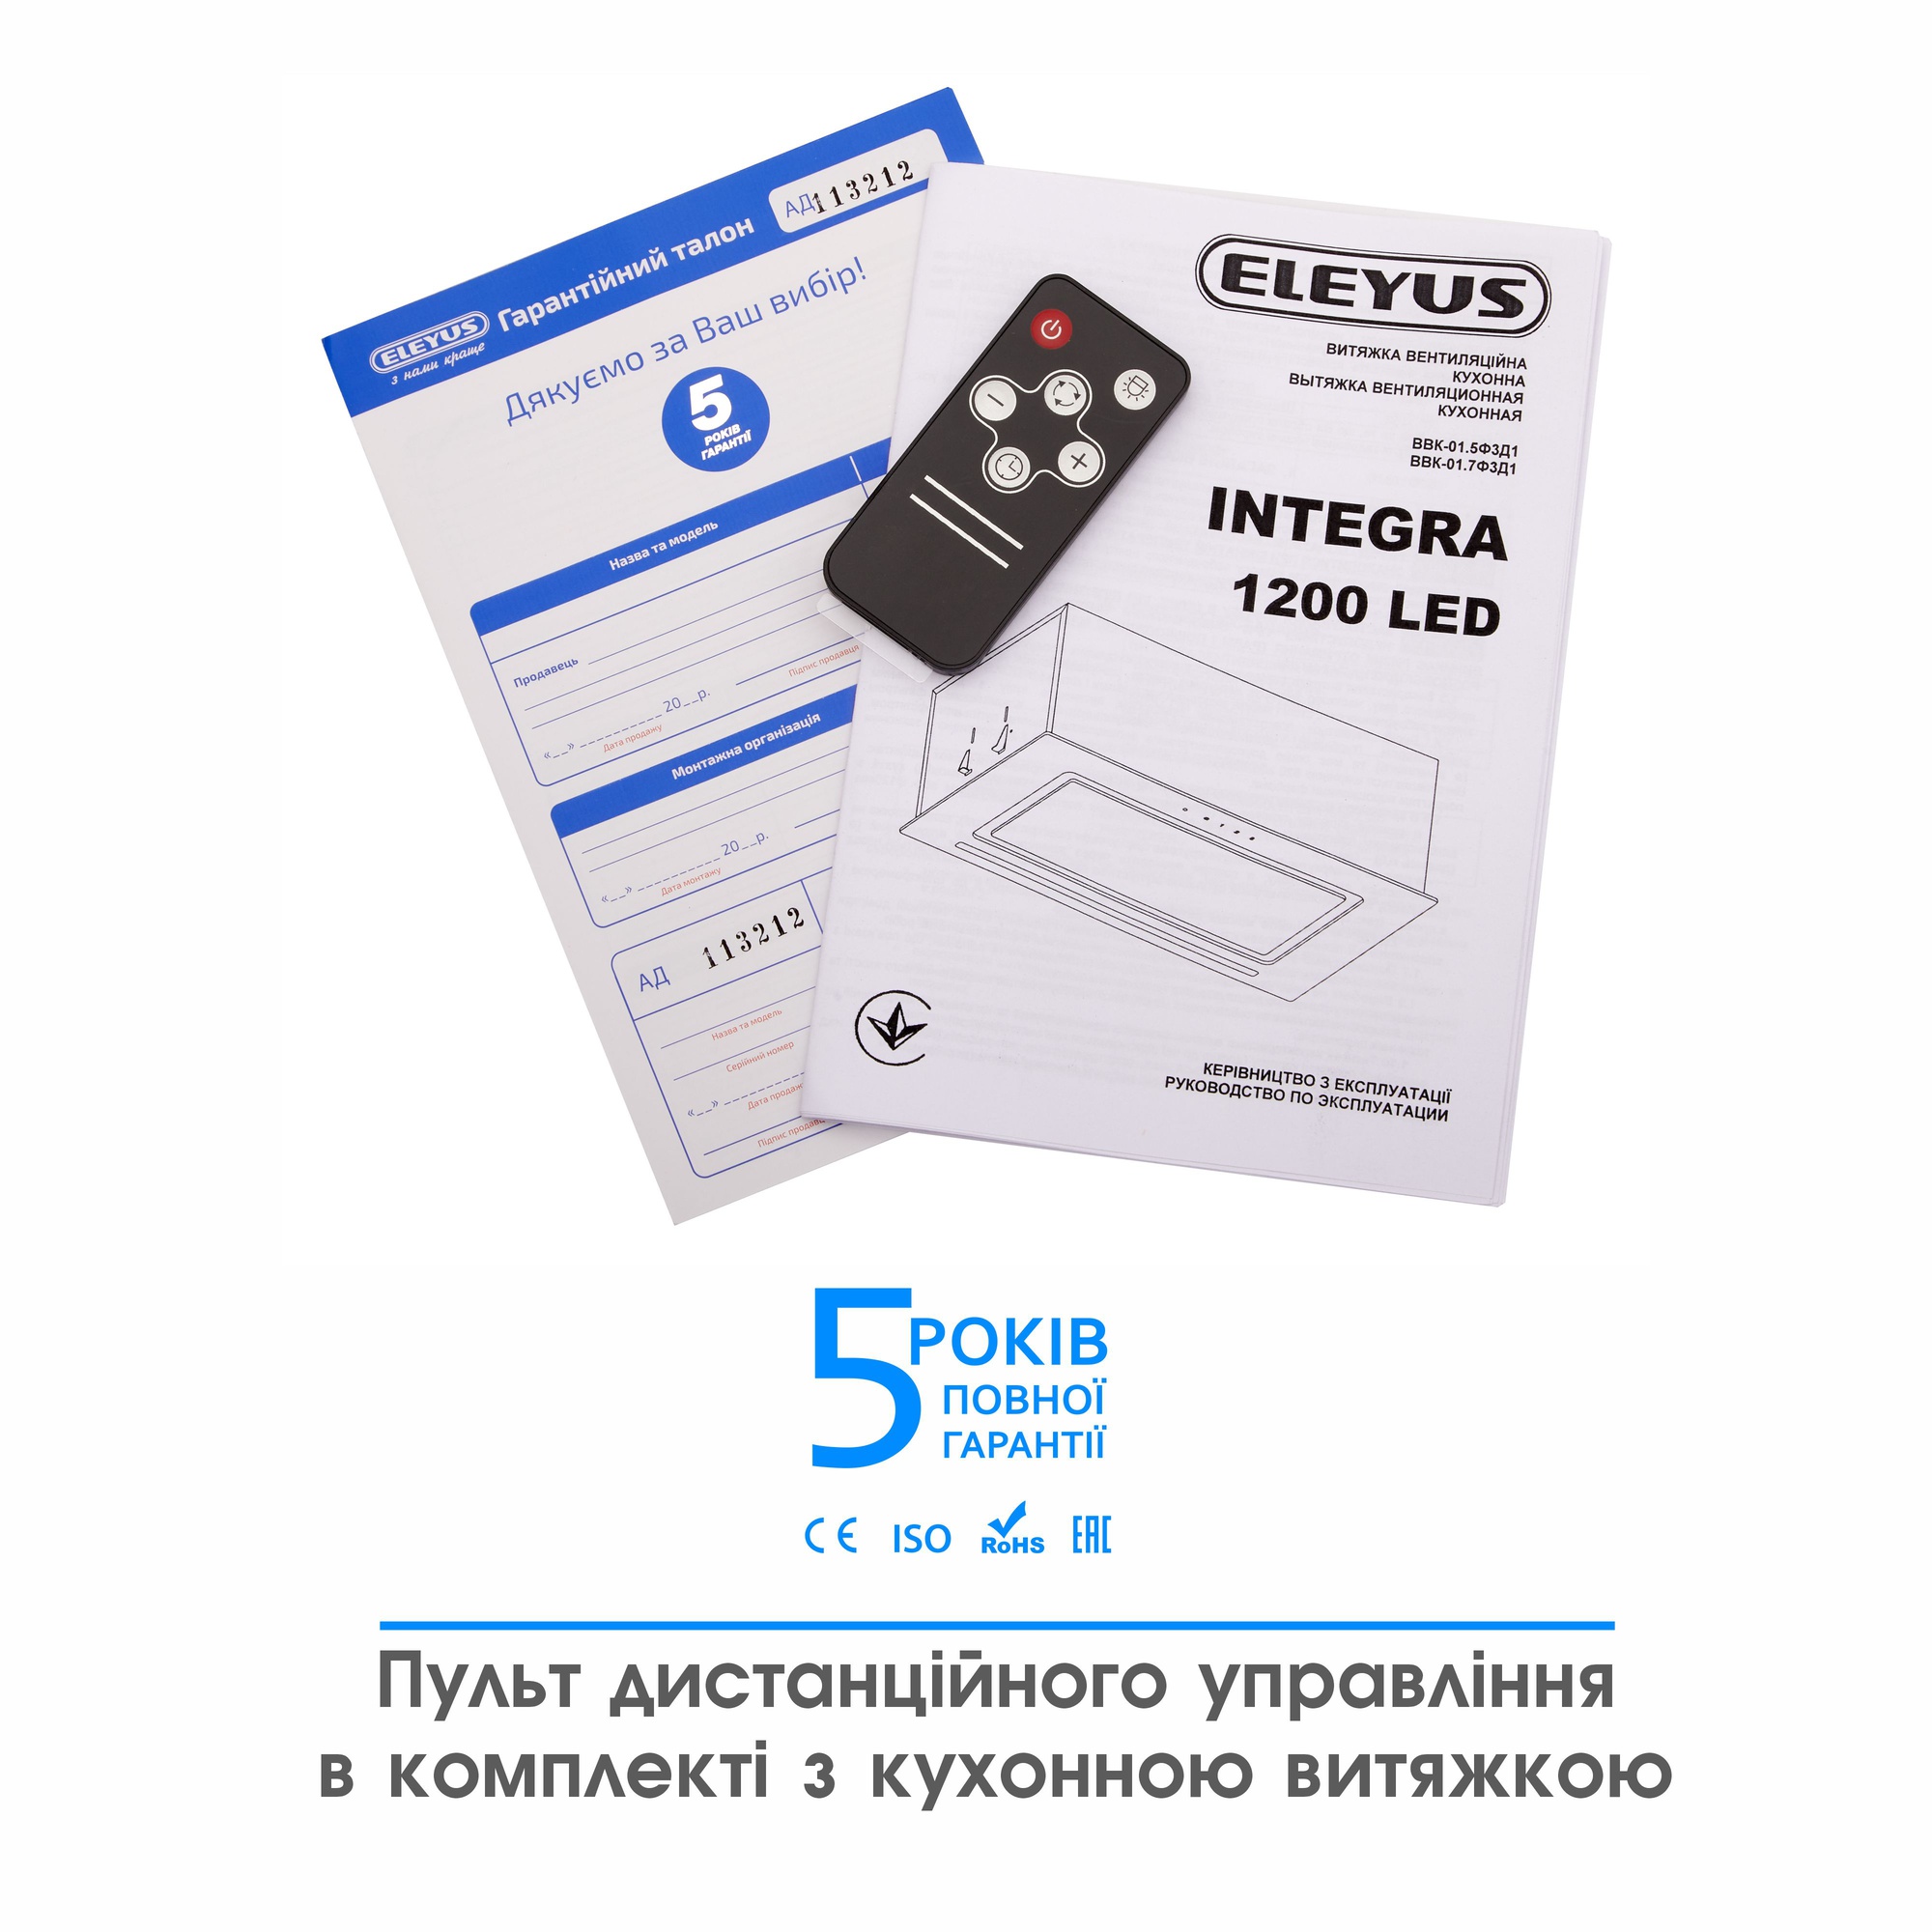 карточка товара Eleyus Integra 1200 LED 70 WH - фото 16